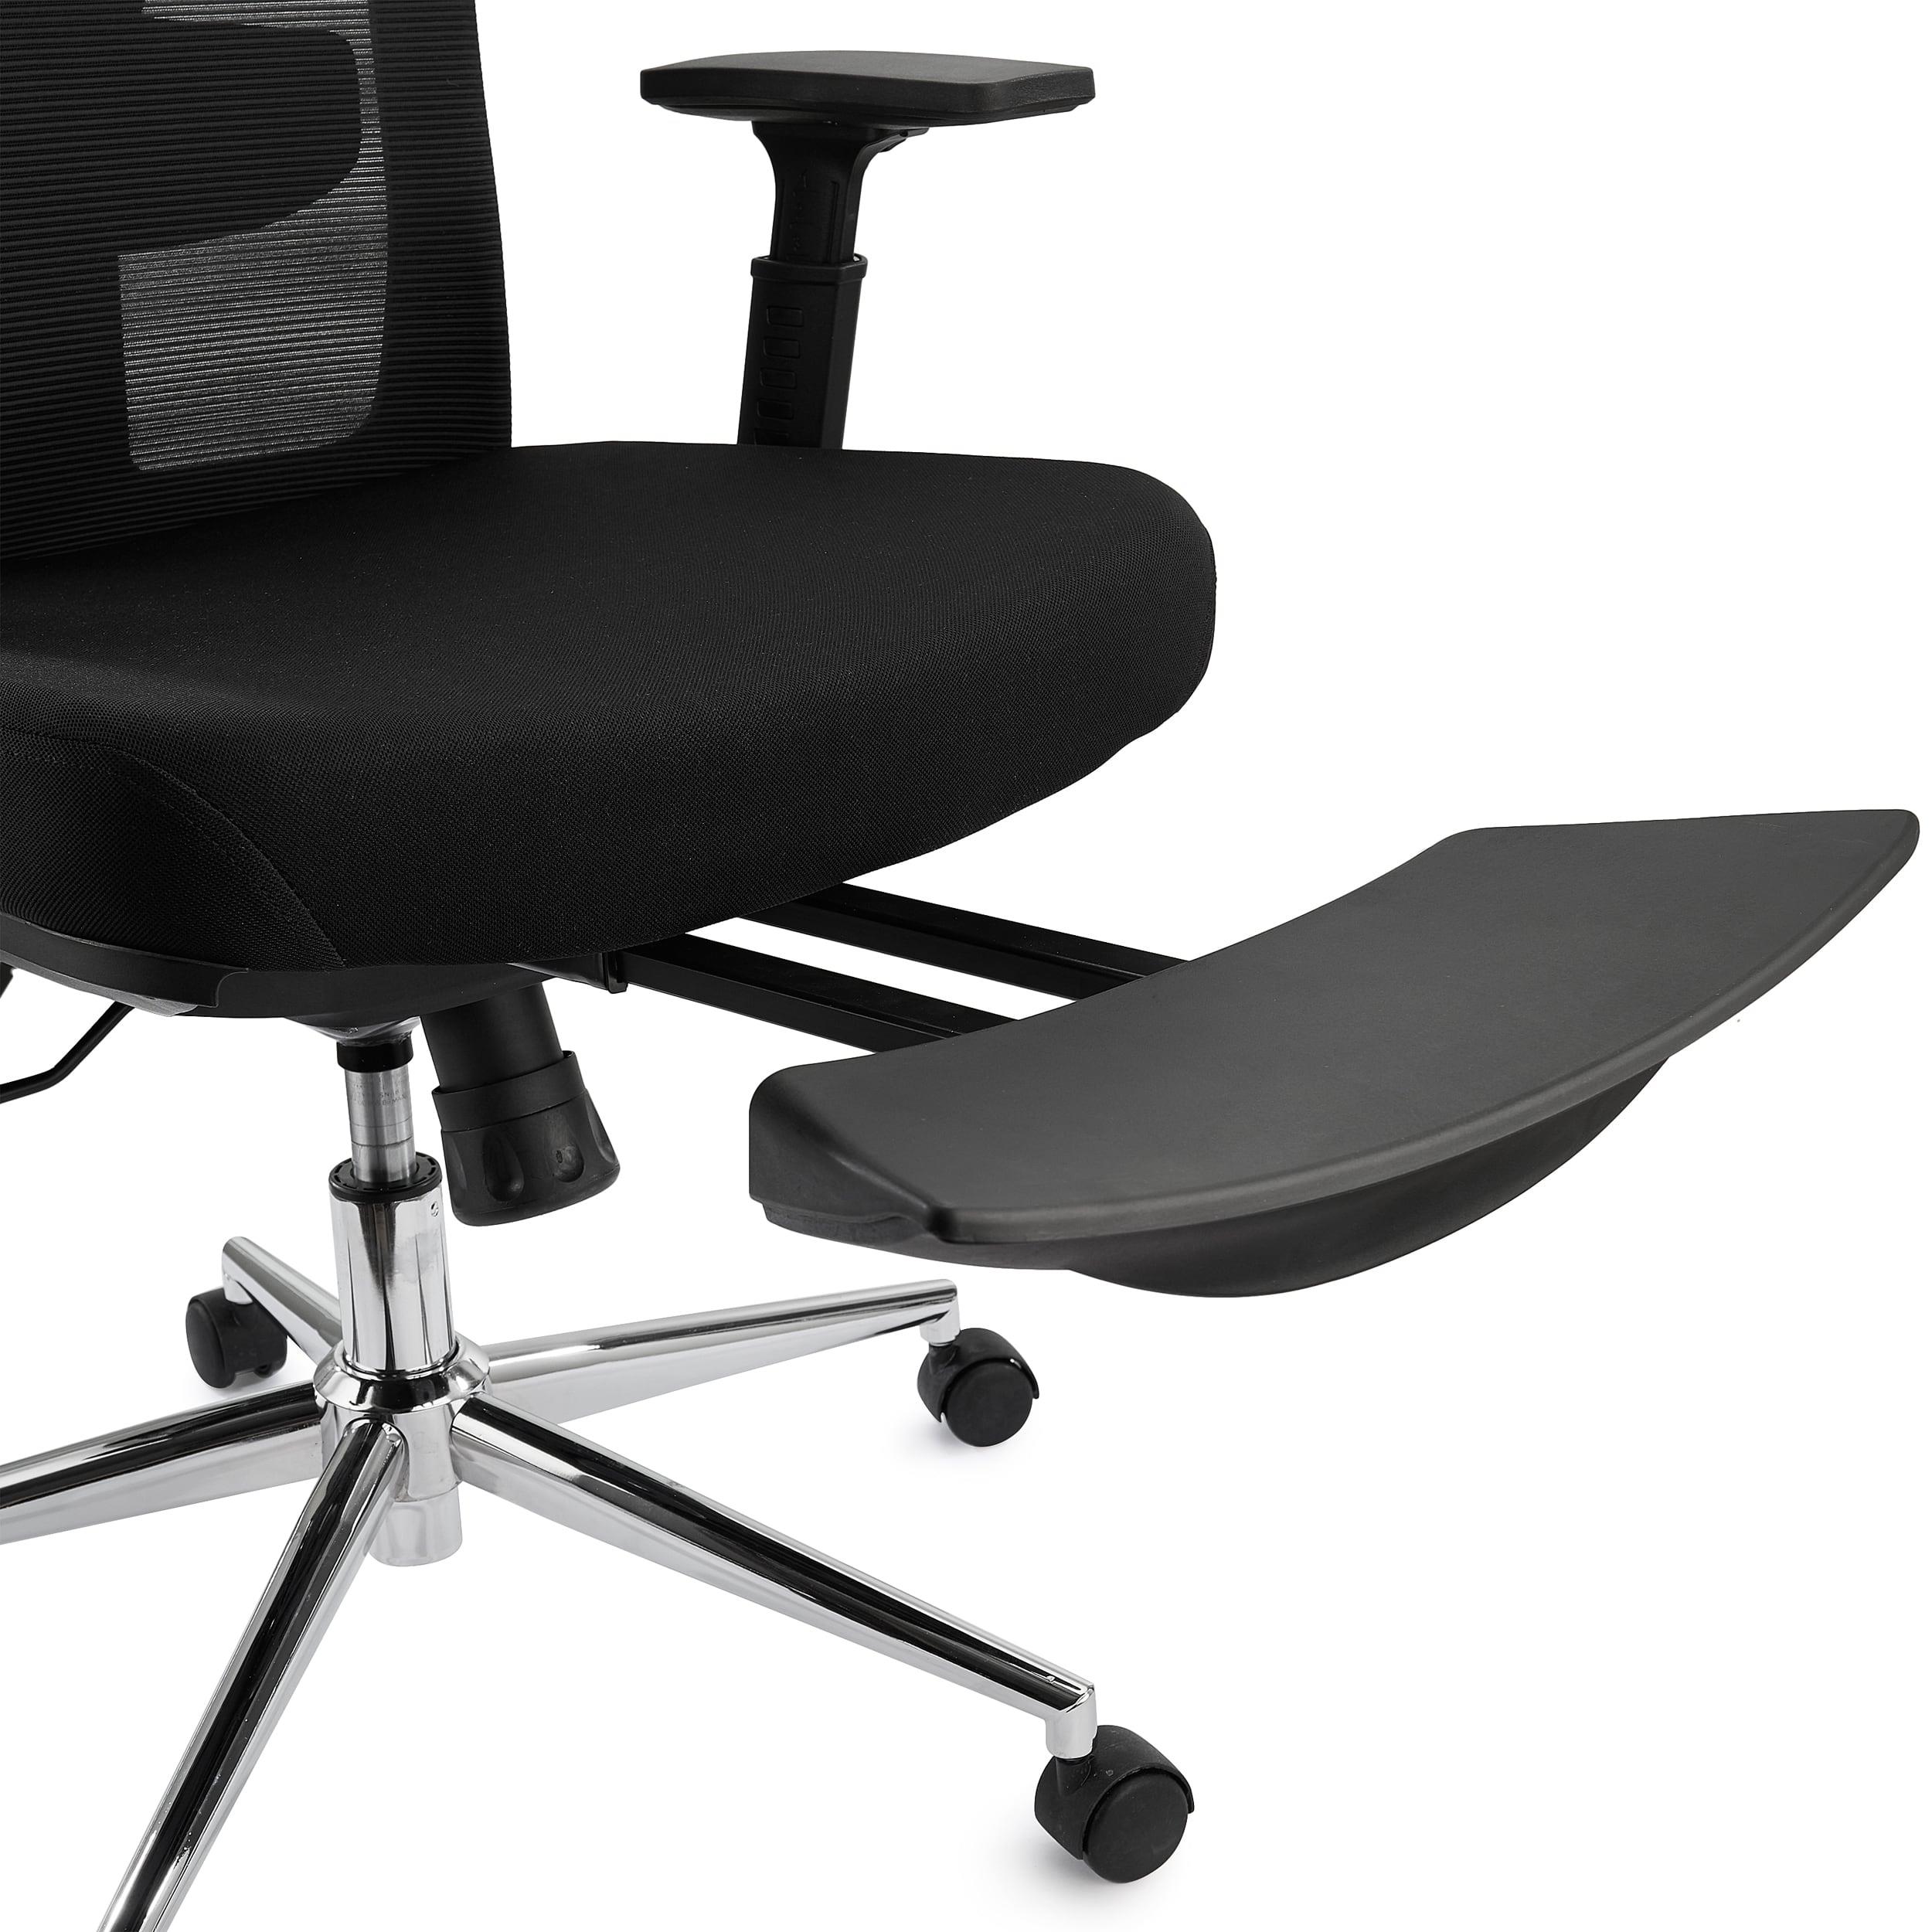 Silla de oficina con reposapiés, silla ergonómica para computadora